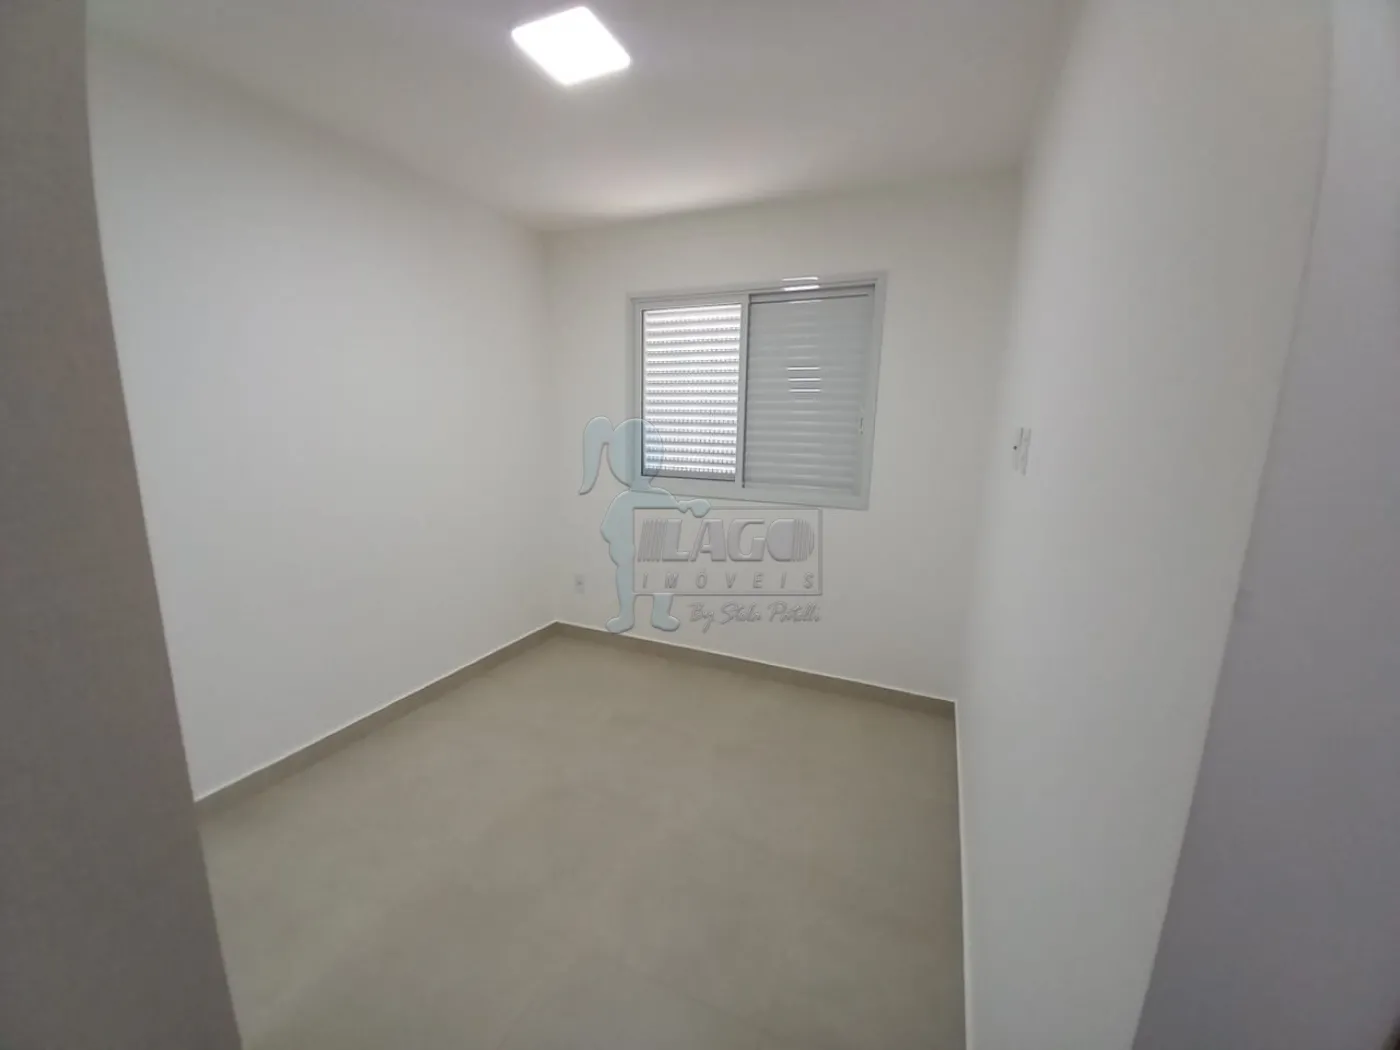 Alugar Apartamentos / Padrão em Ribeirão Preto R$ 3.200,00 - Foto 15